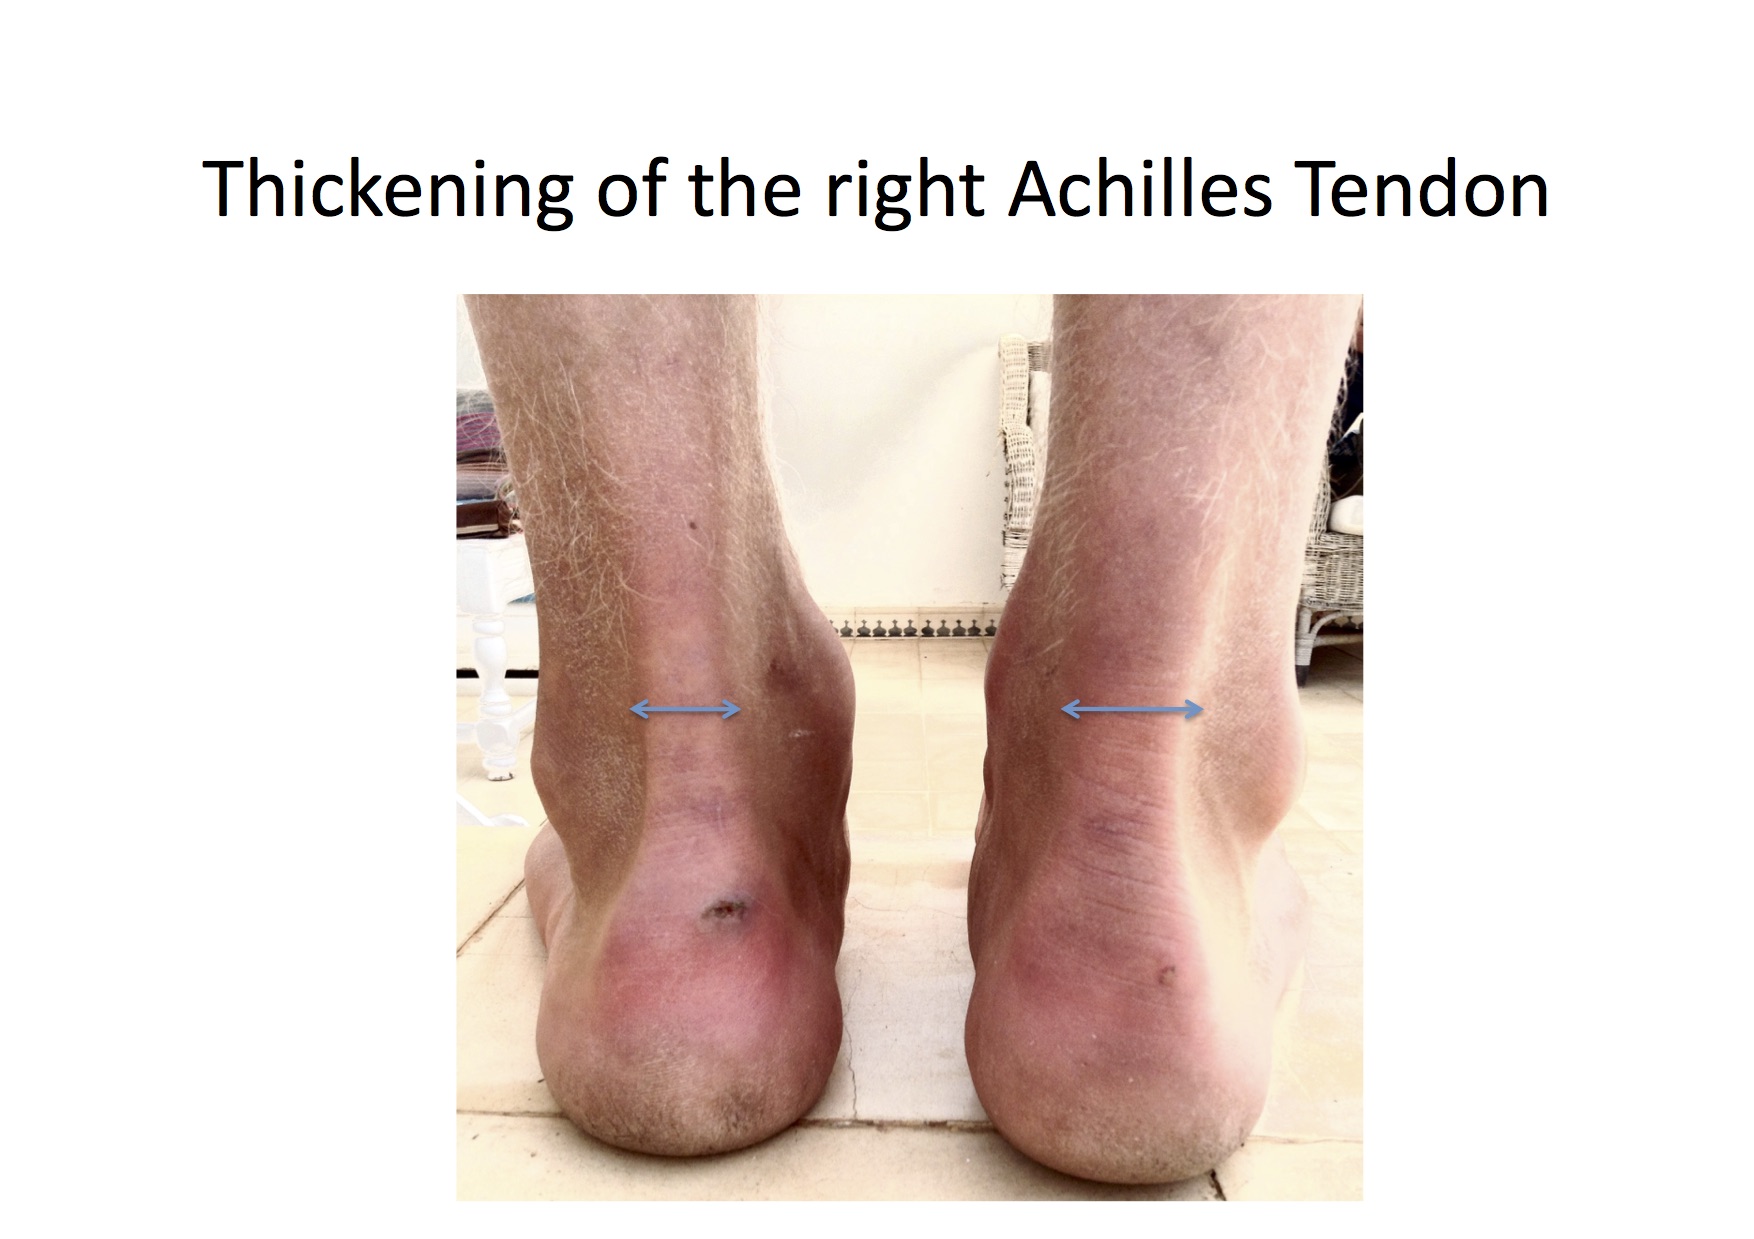 Achilles Tendonitis Basics | Florida Orthopaedic Institute